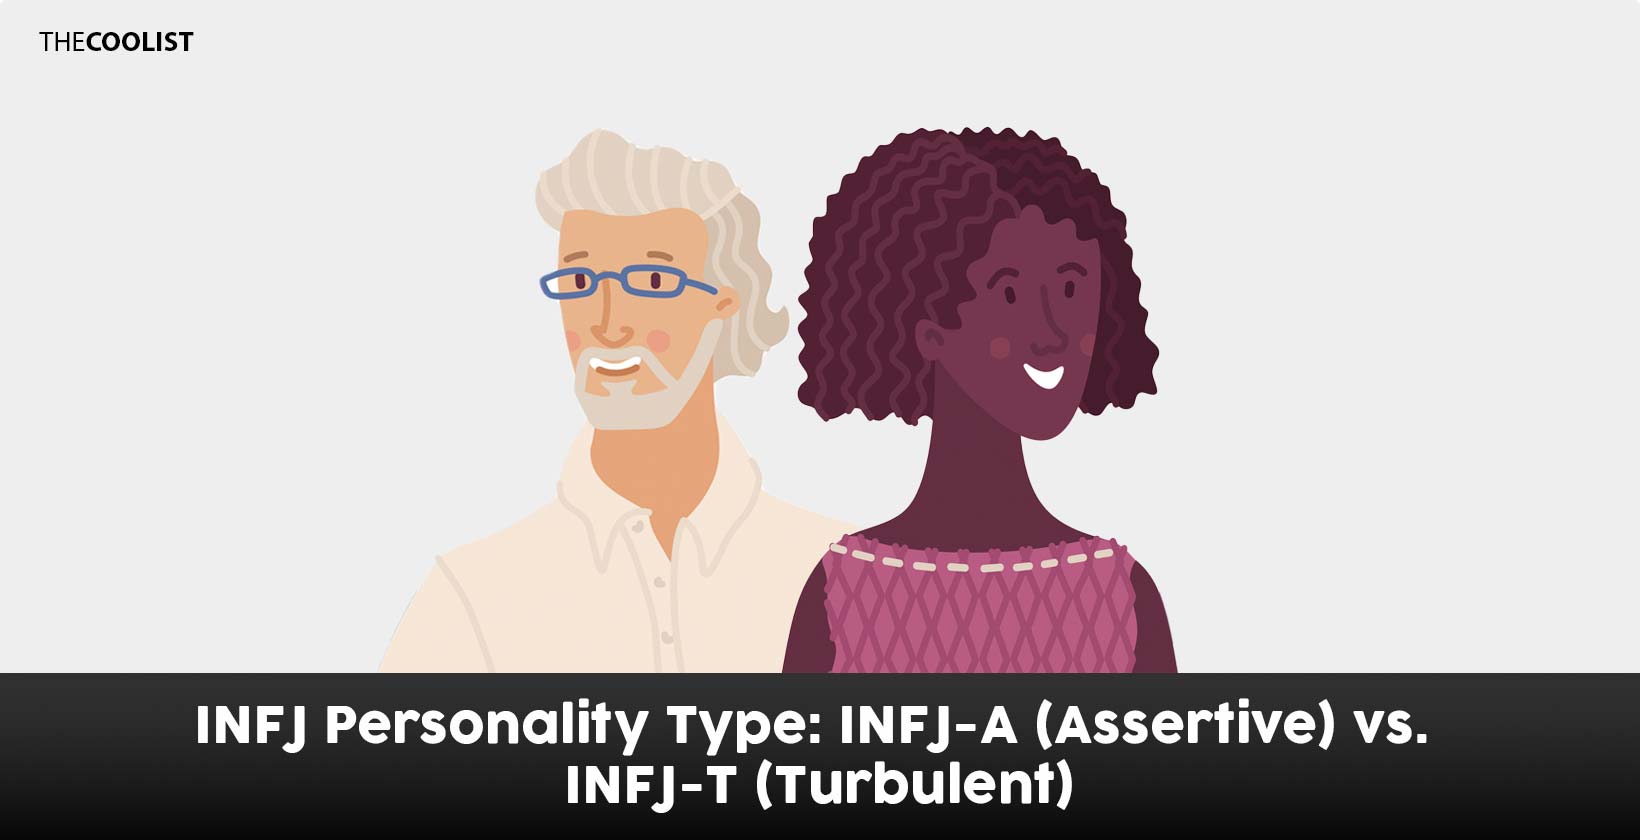 INFJ-A (Assertive) vs INFJ-T (Turbulent)